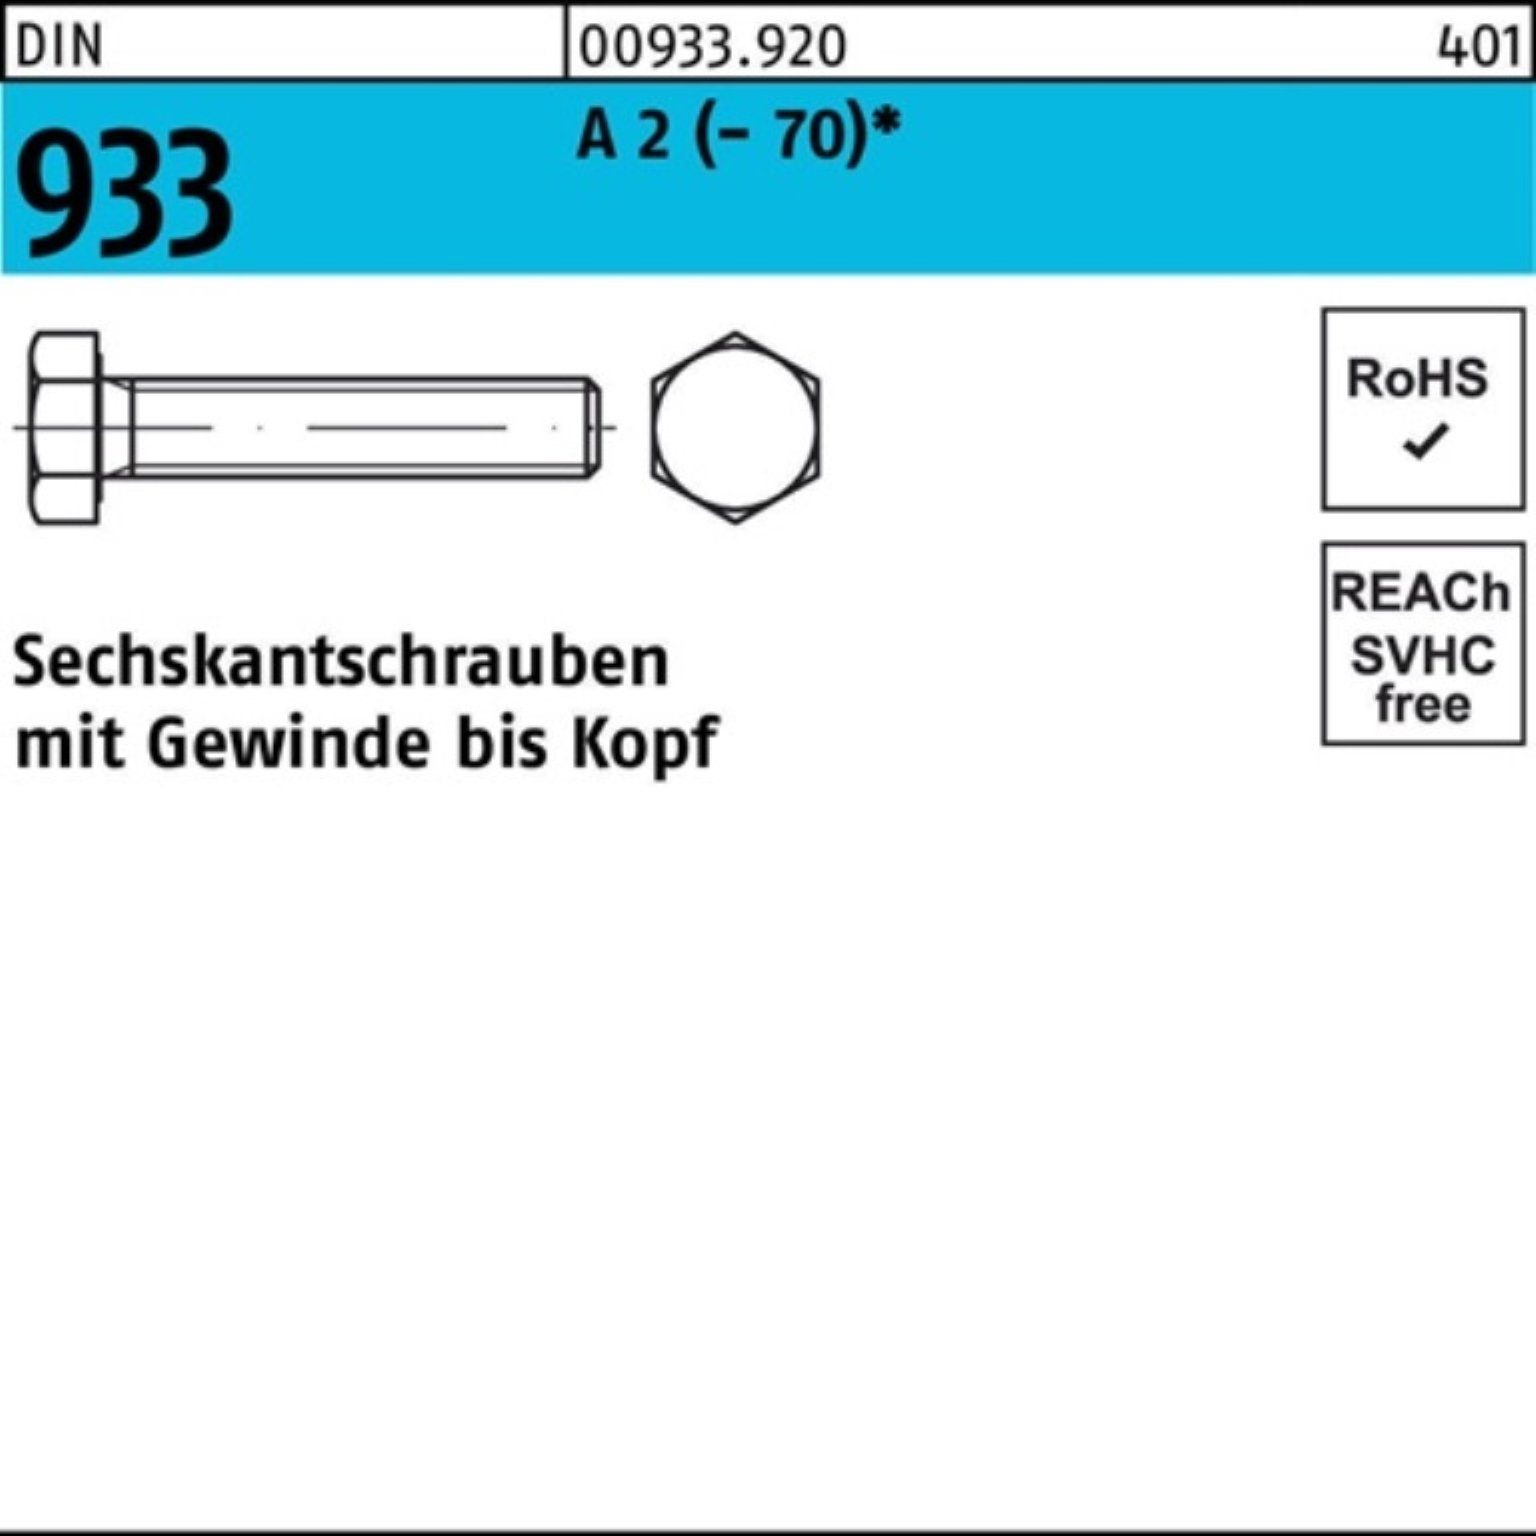 Sechskantschraube Reyher (70) 100er VG DI Stück 933 Sechskantschraube DIN A Pack M3x 8 2 100